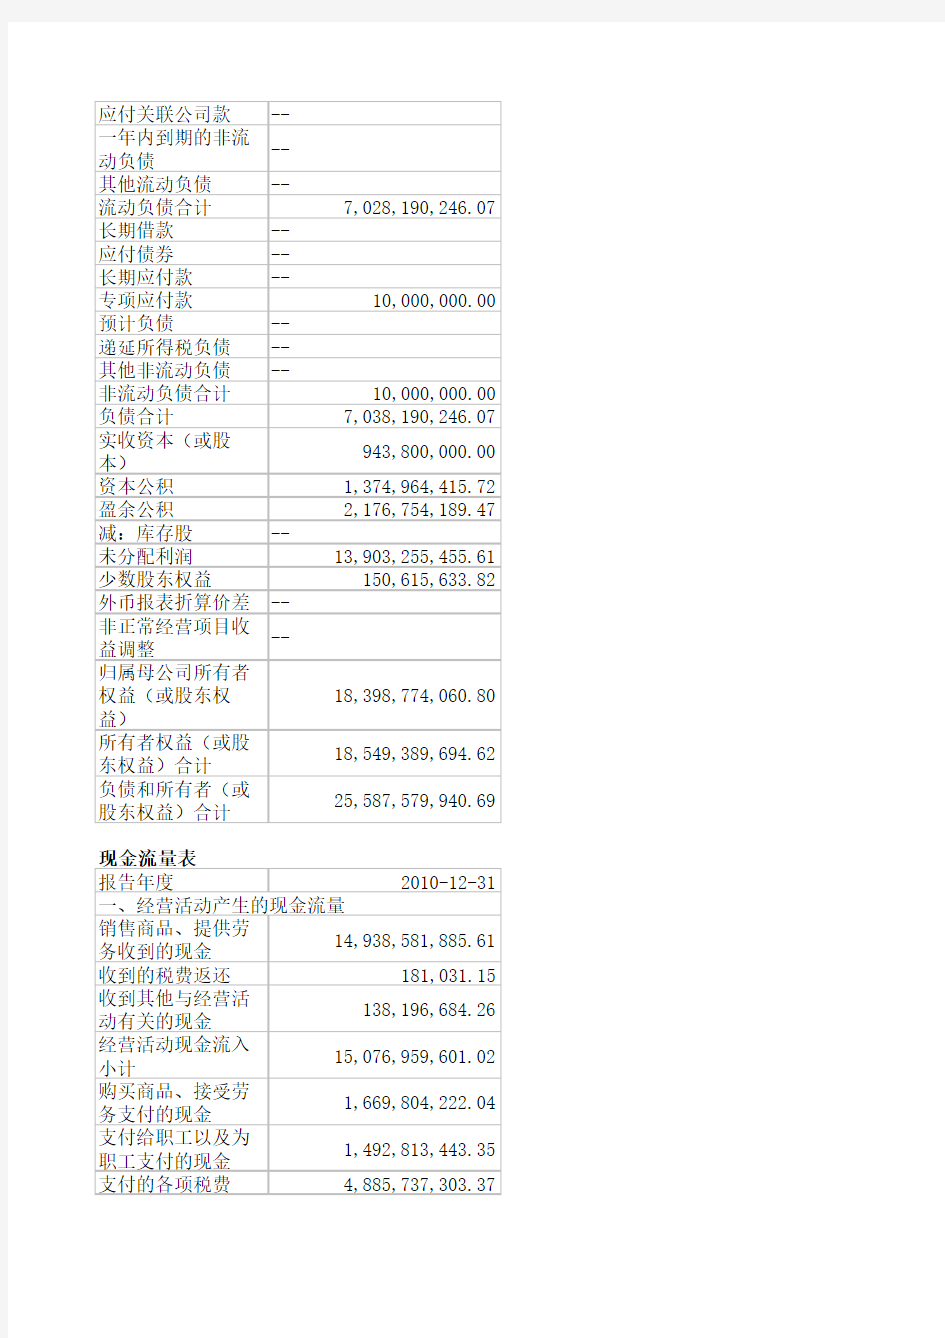 贵州茅台资产负债表现金流量表利润表